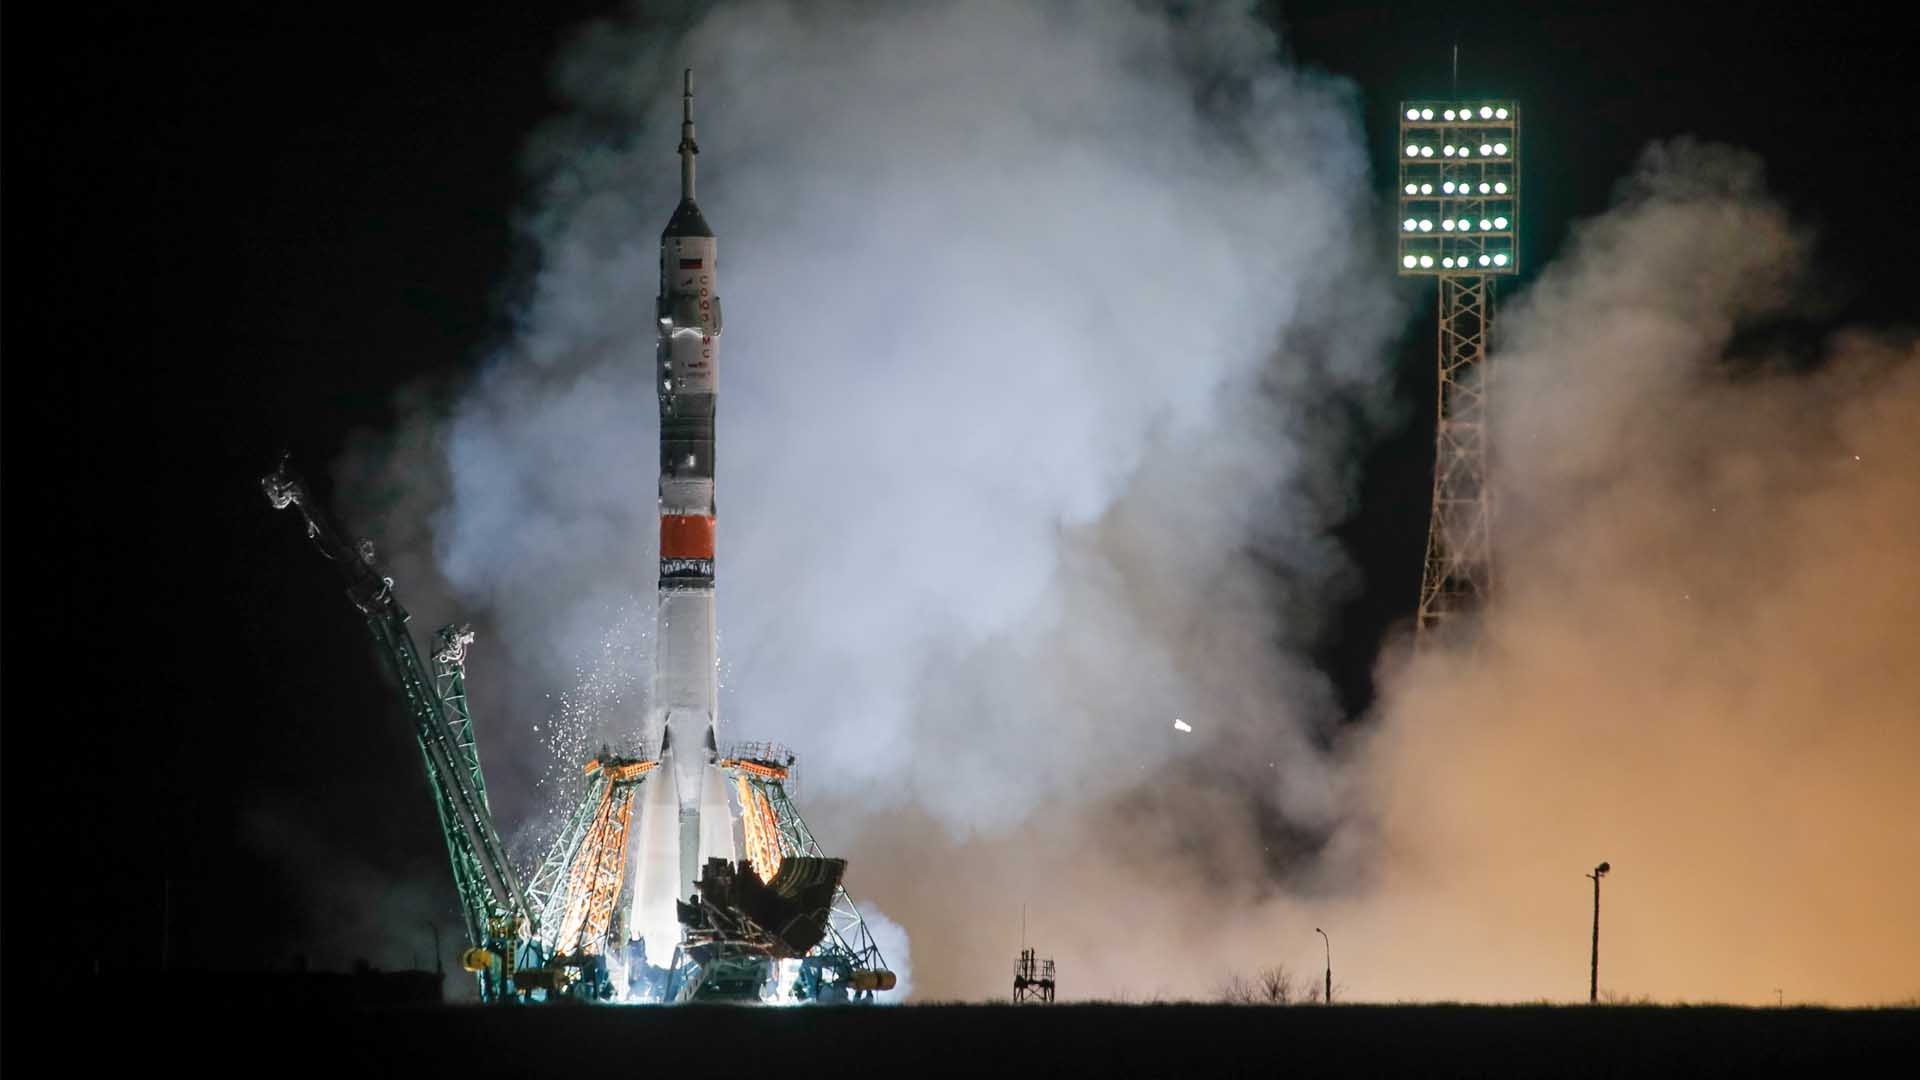 Lanzada con éxito la nave tripulada rusa Soyuz MS-12 con destino a la EEI